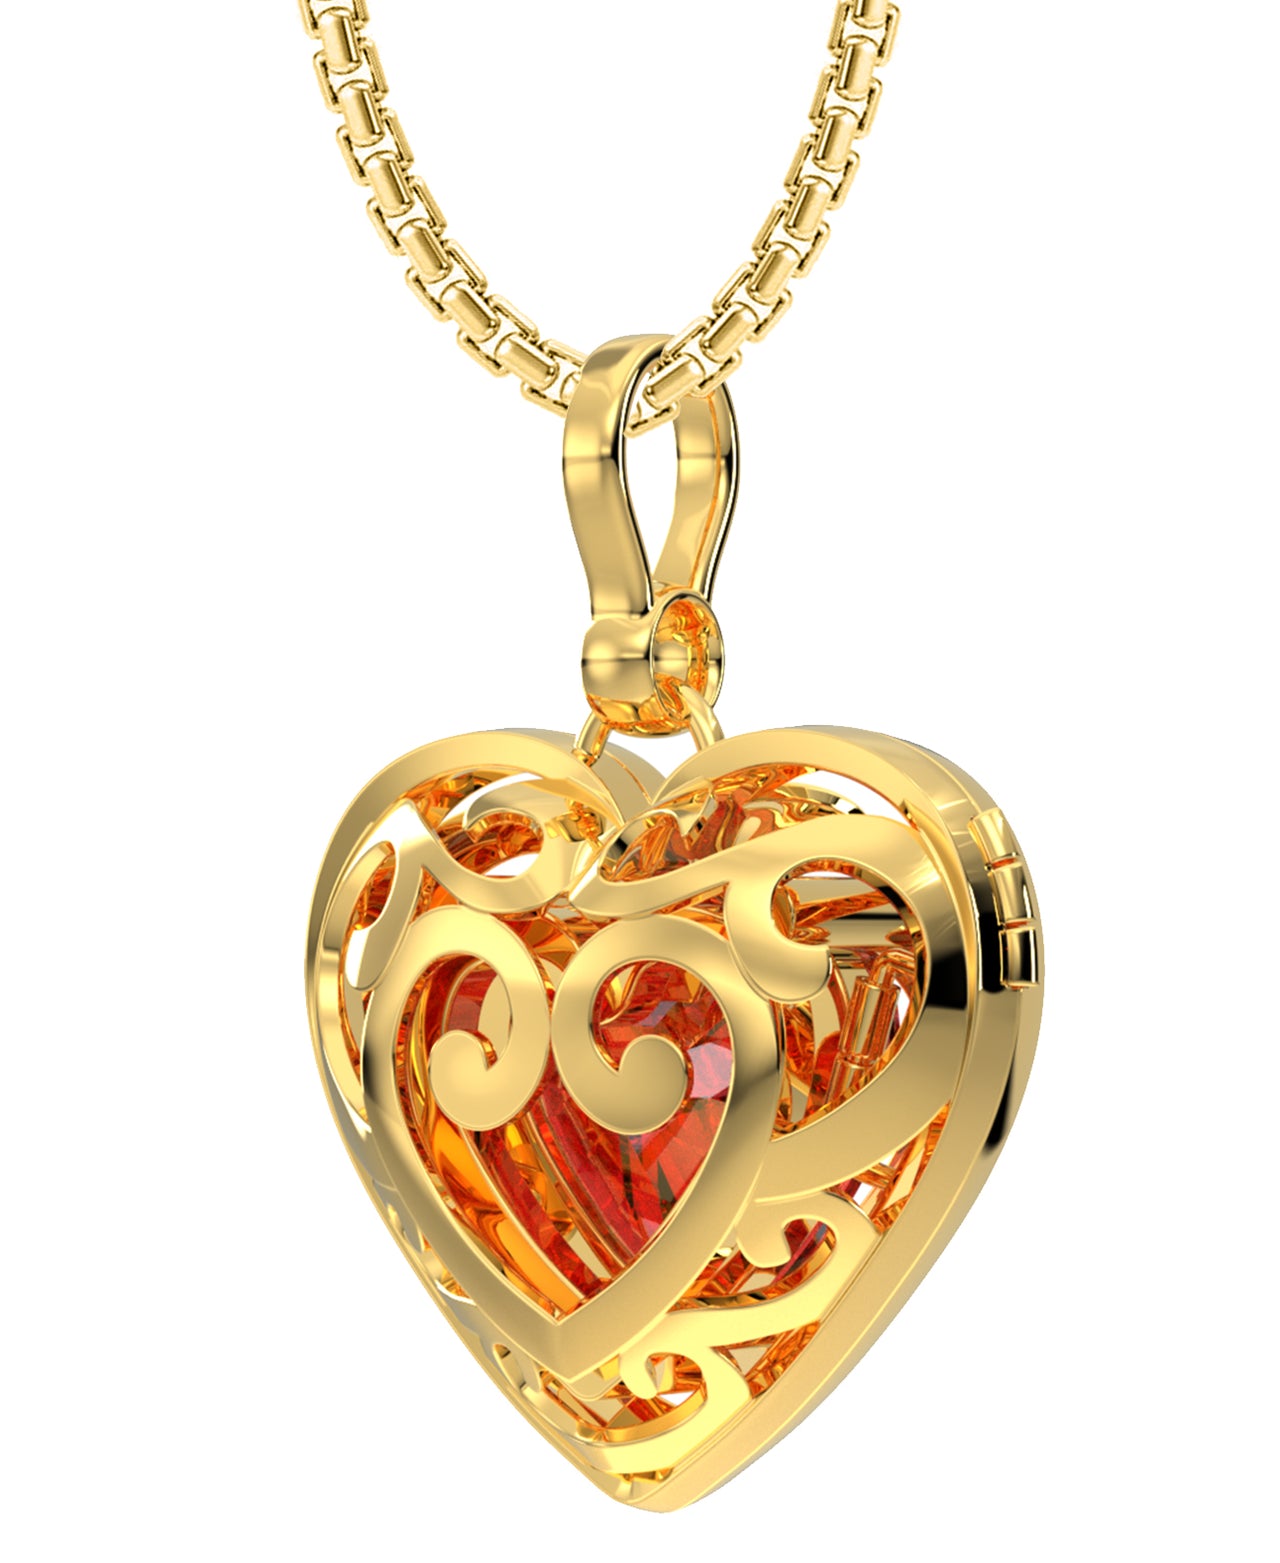 Large Ladies 14k Yellow Gold Polished Gemstone Heart Locket Pendant Necklace, 26mm